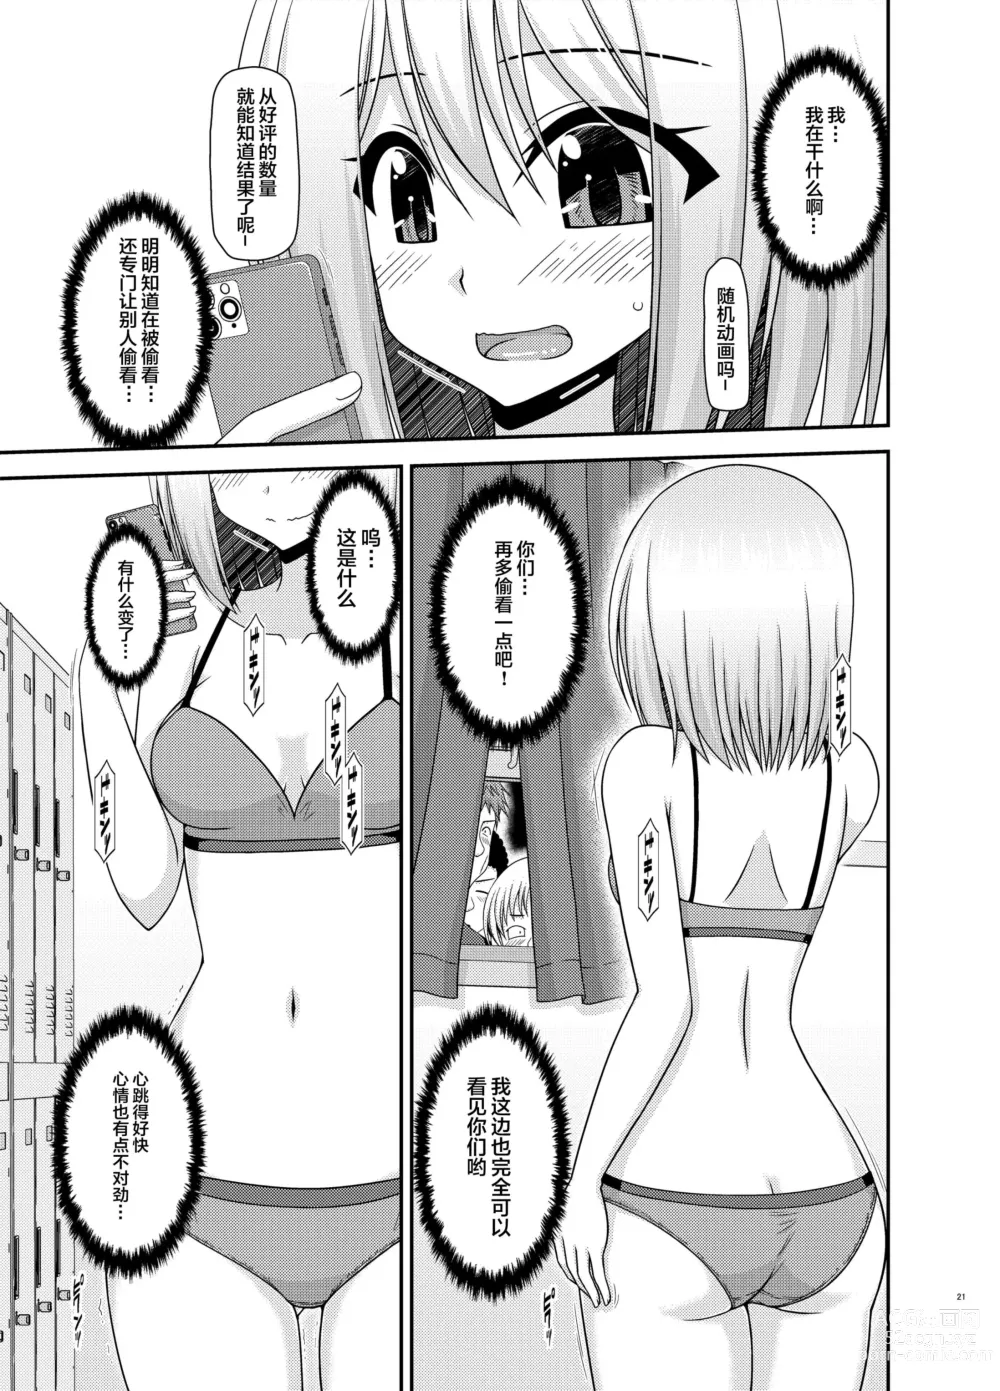 Page 18 of manga Nozokare Roshutsu Shoujo